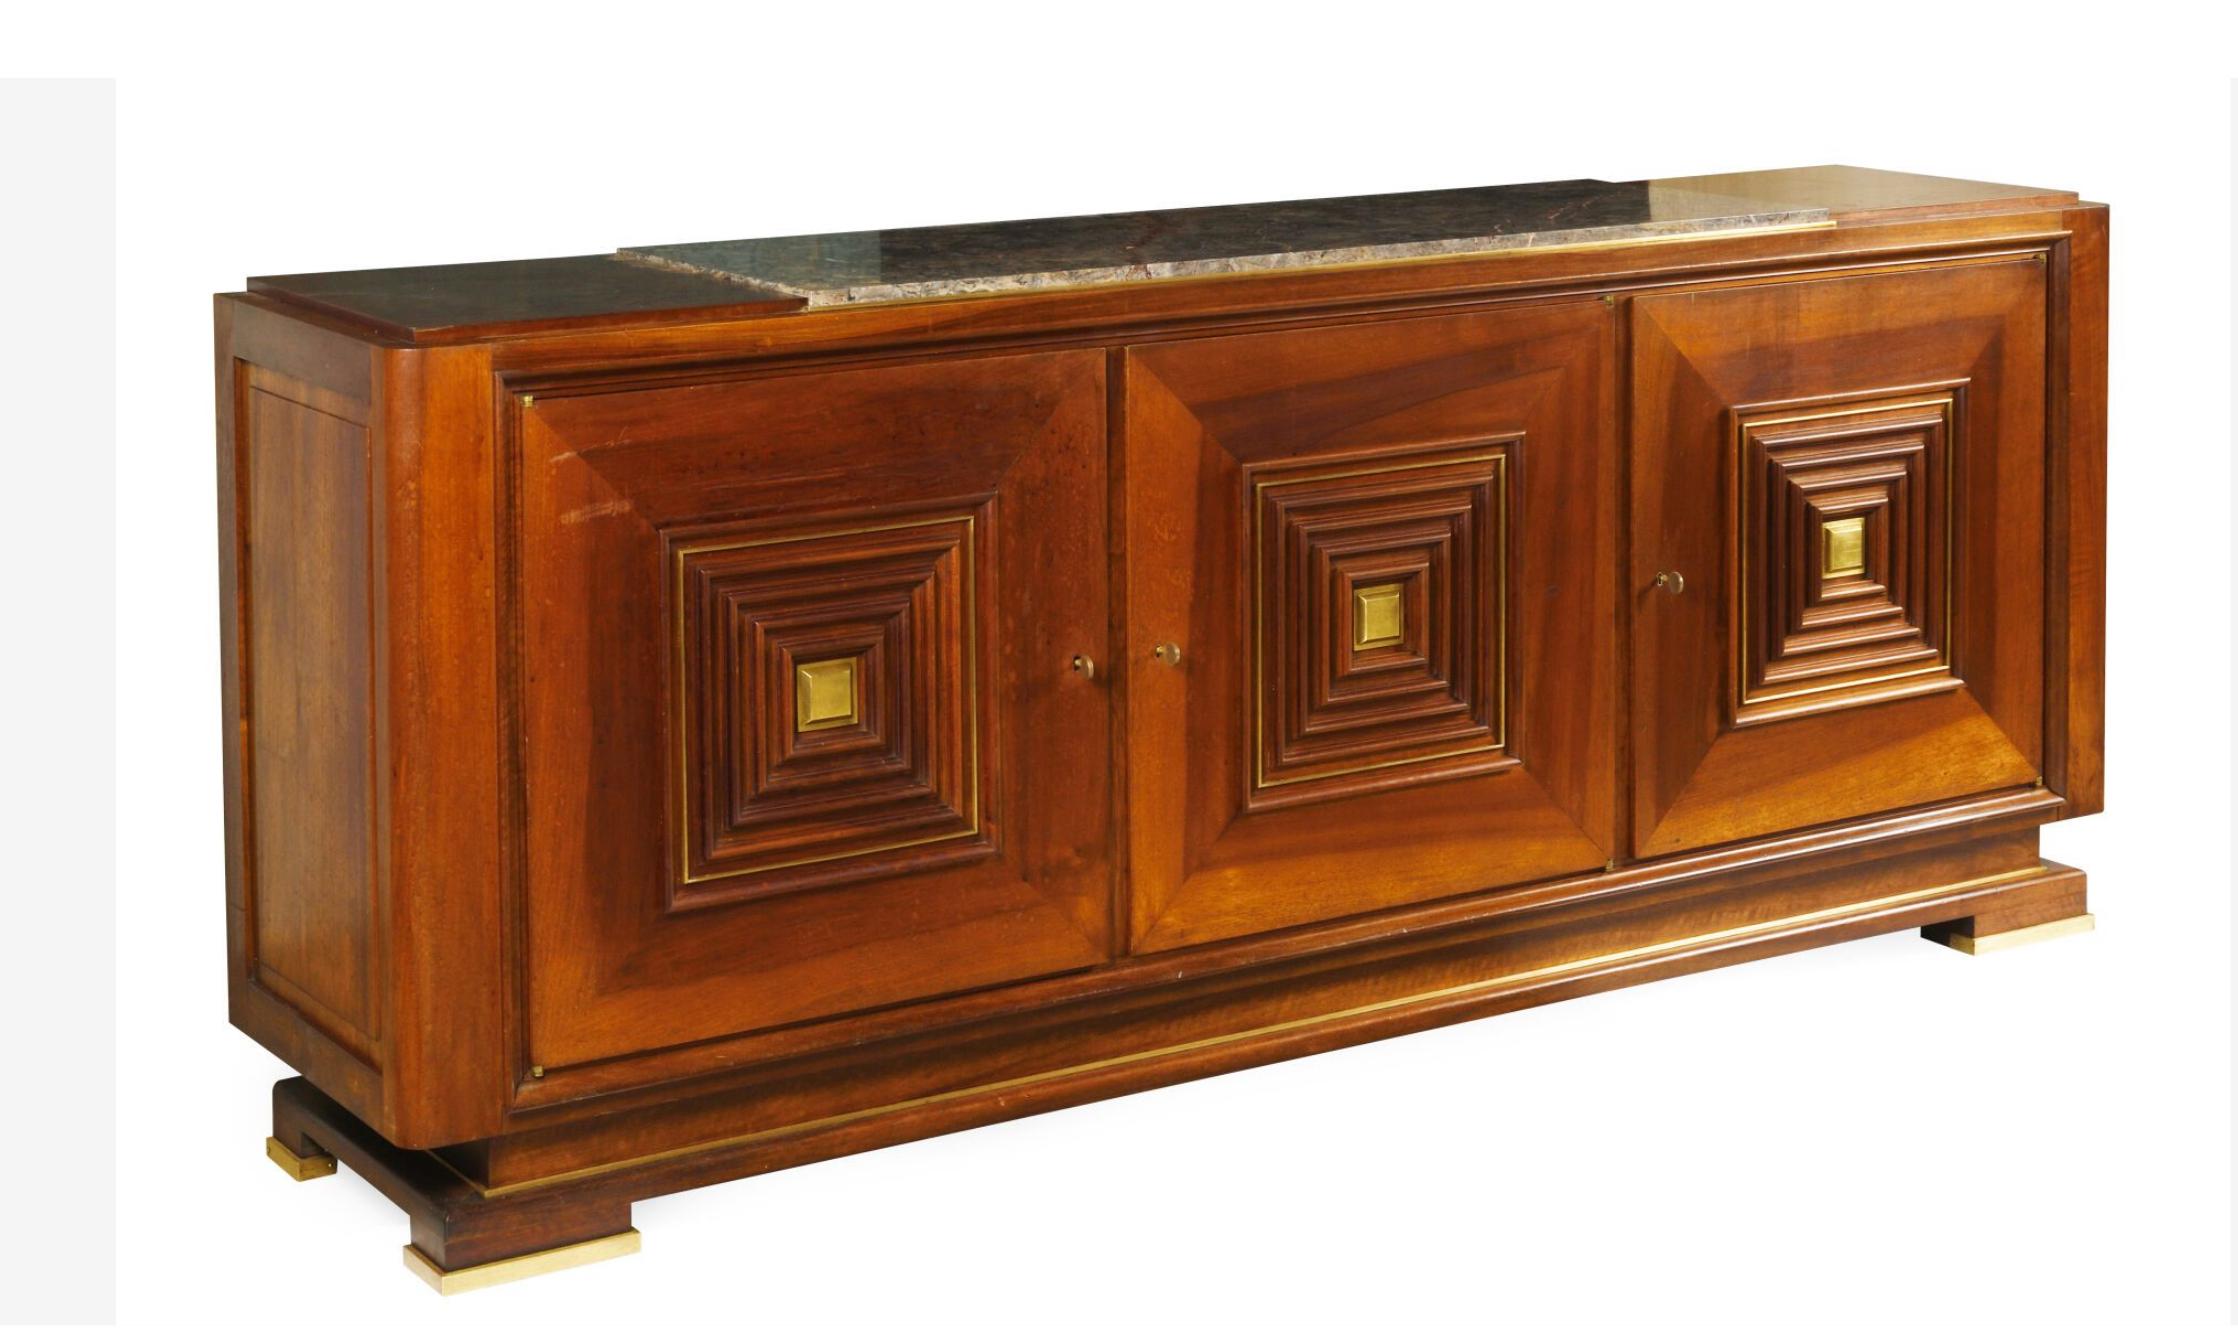 Buffet rectangulaire vintage en acajou attribué à l'architecte et designer de meubles français Maxime OLD (1910-1991).
Le centre de la partie supérieure est recouvert de marbre gris, la façade s'ouvrant sur trois portes décorées de carrés